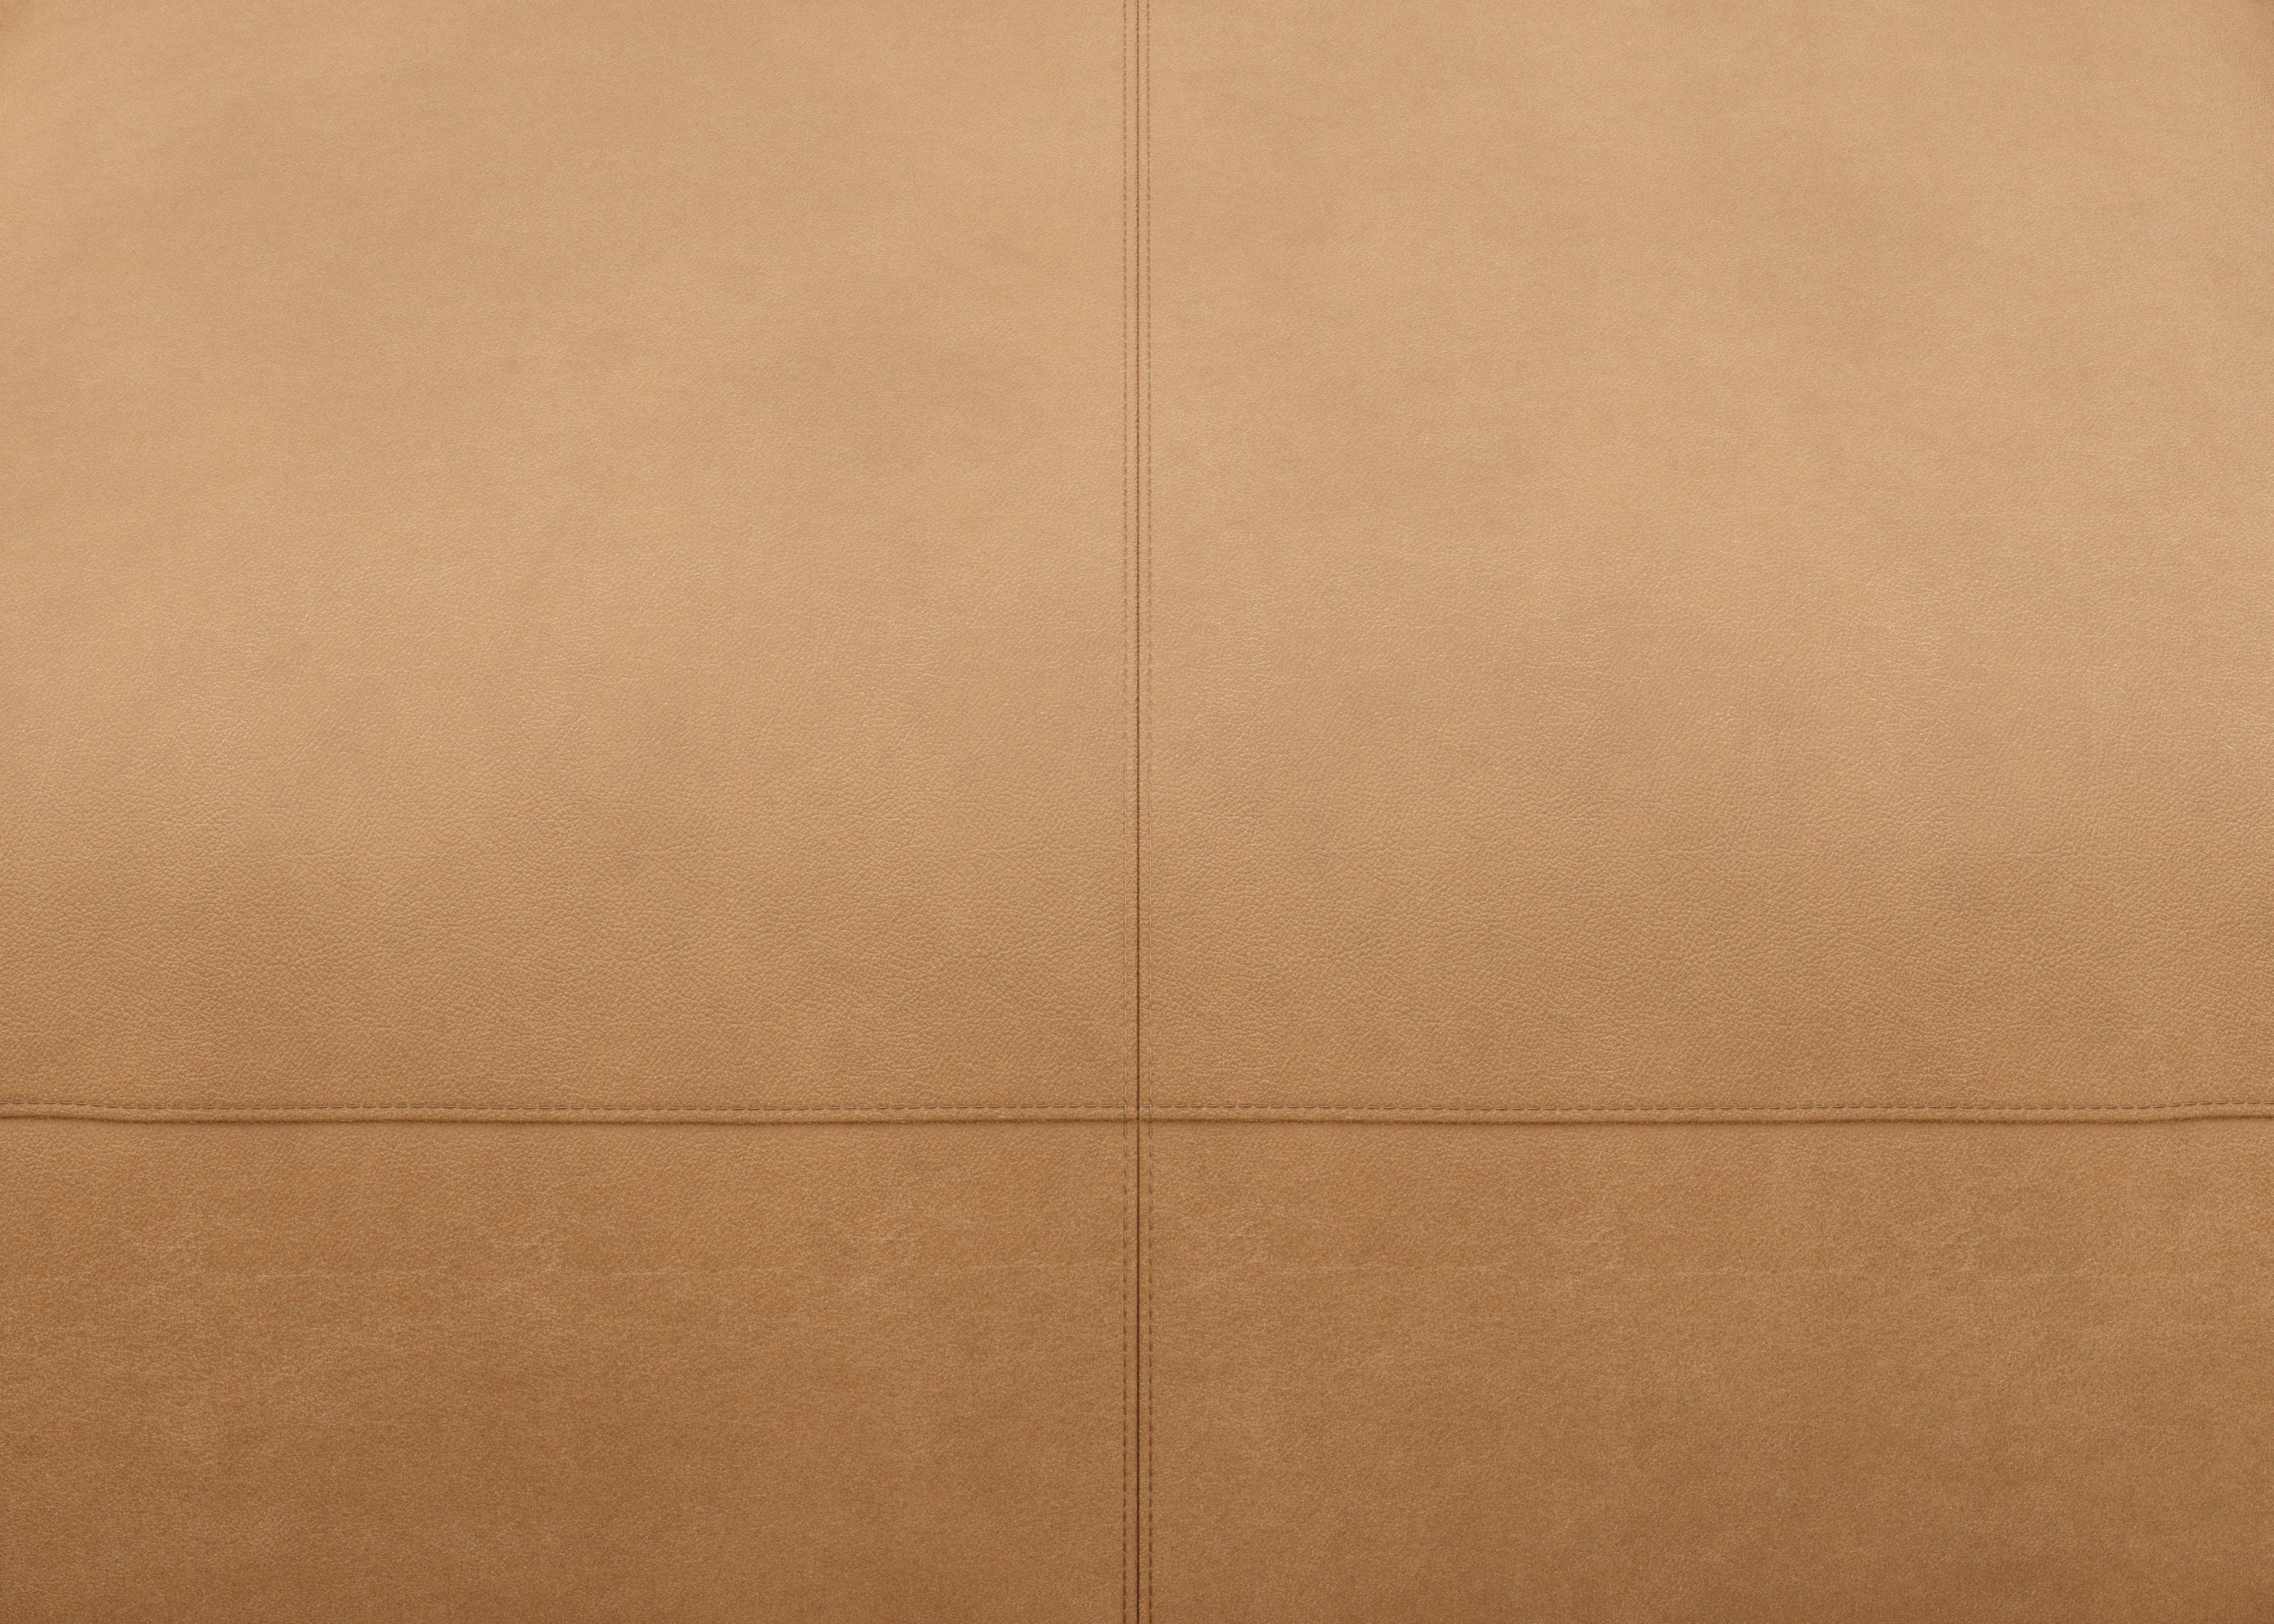 vetsak®-Corner Sofa L Leather brown